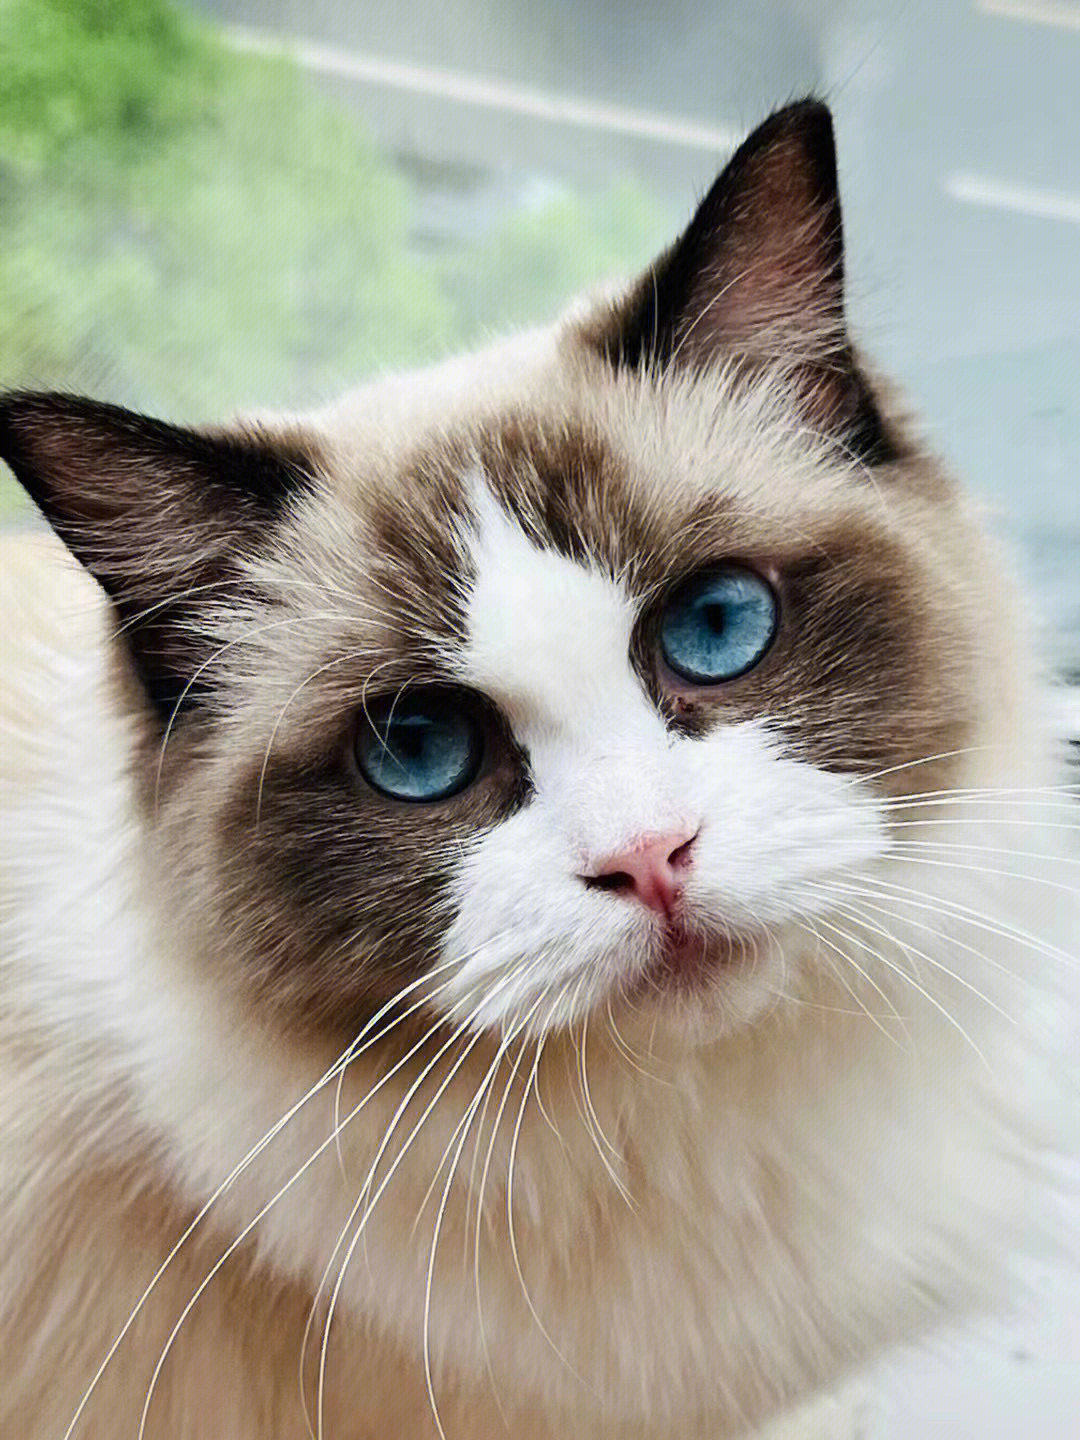 蓝眼睛的猫品种及图片图片